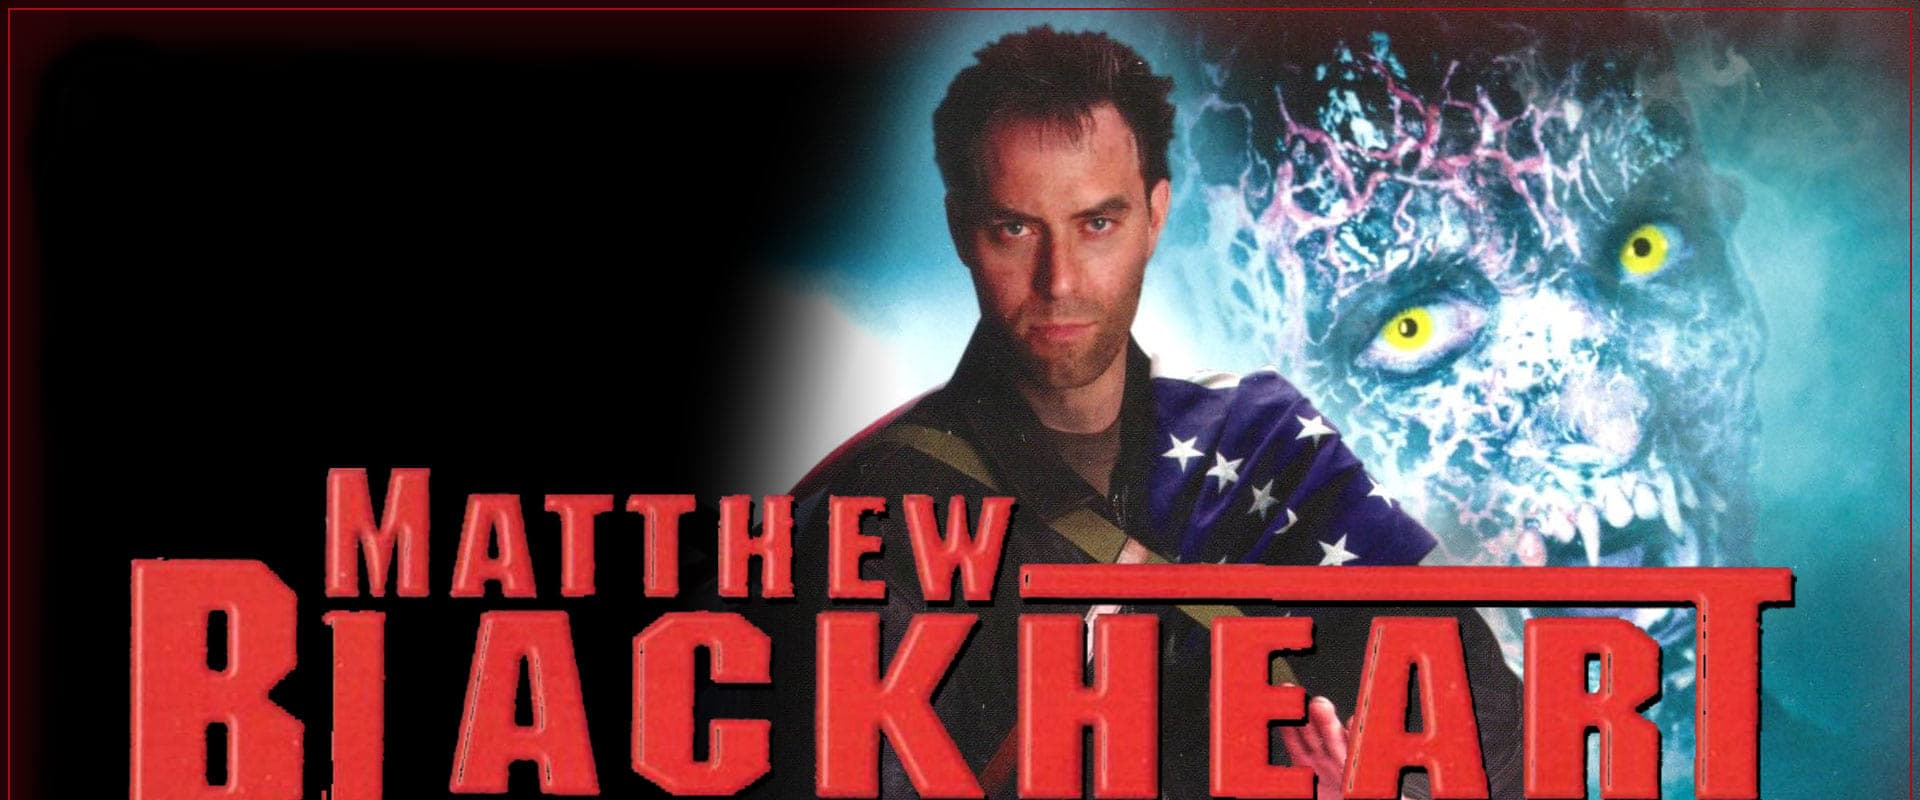 Matthew Blackheart: Monster Smasher